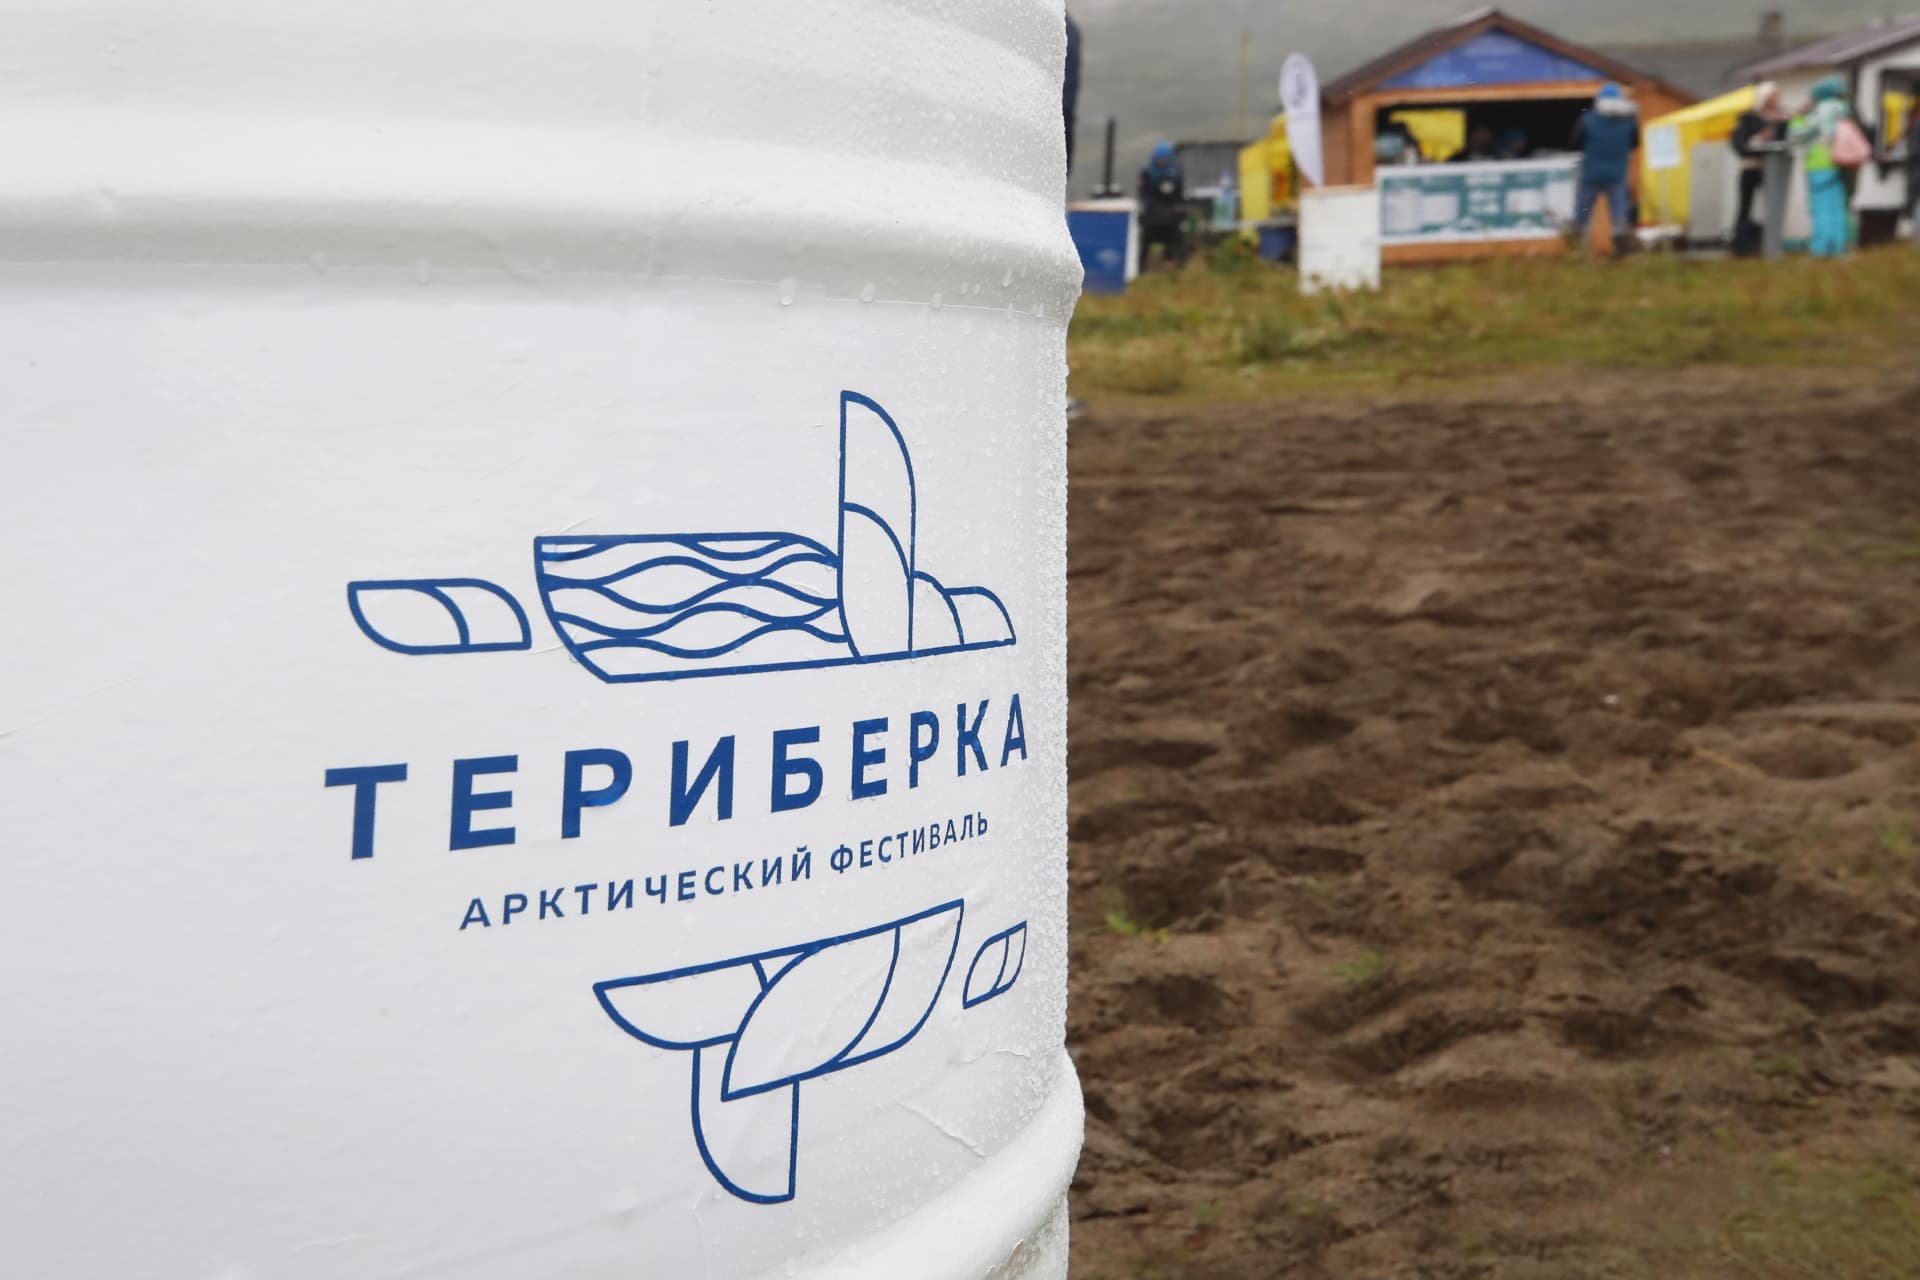 В Мурманской области 15–16 июля состоится  VIII Арктический фестиваль «Териберка» - фото 1